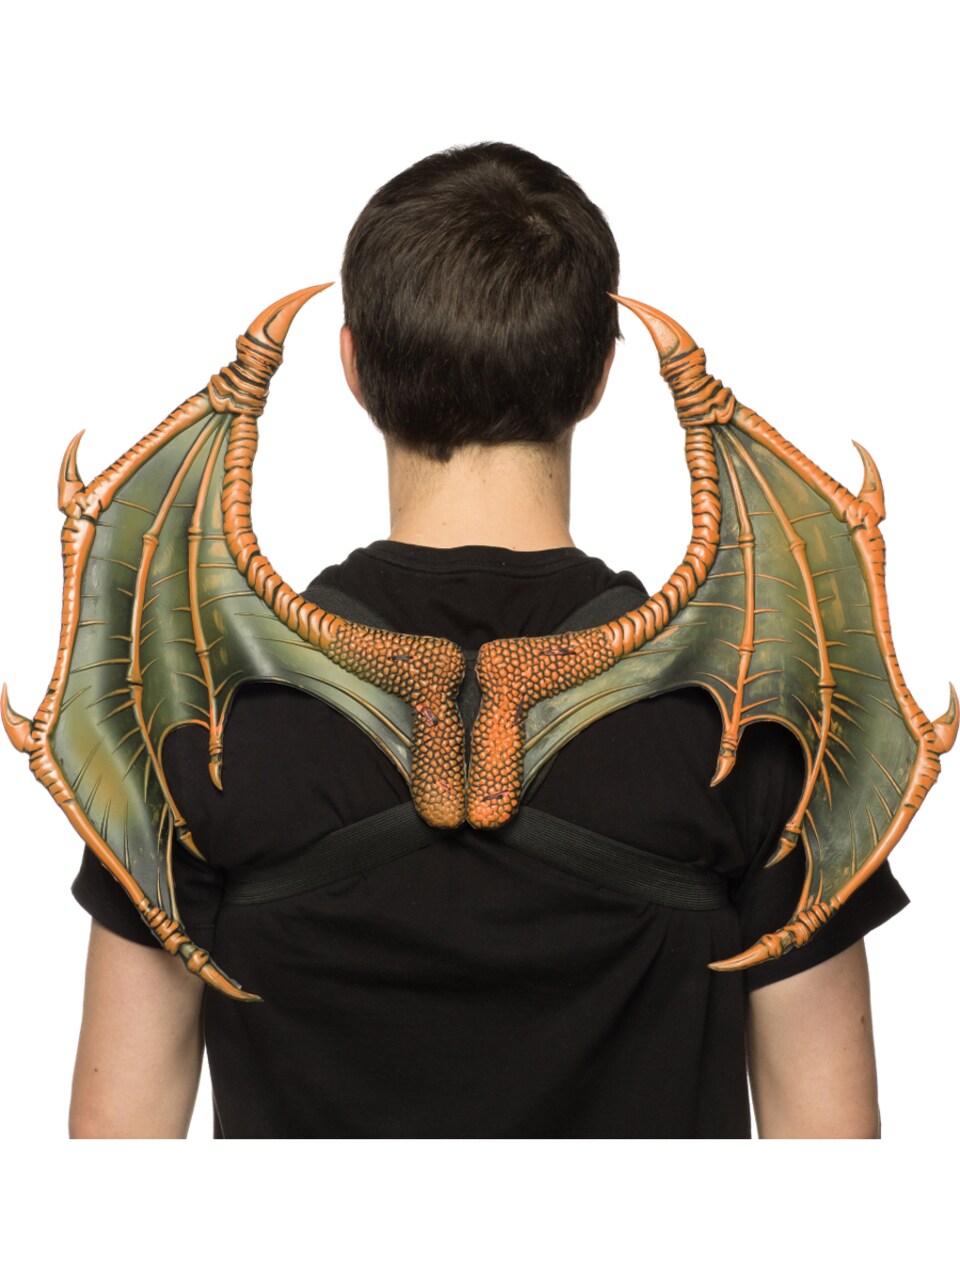 Supersoft Orange Mini Dragon Wings Costume Accessory